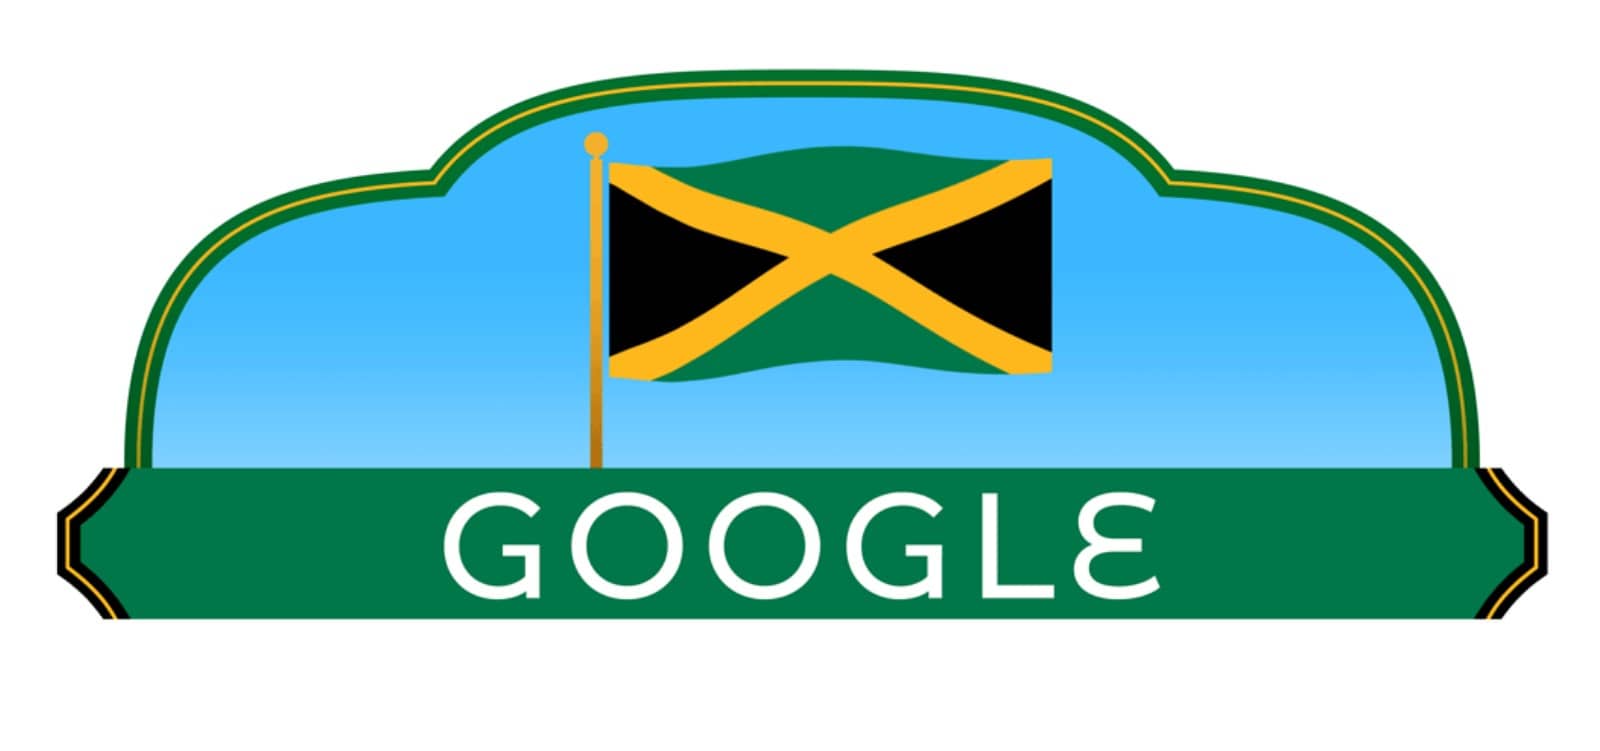 Doodle Google : le drapeau jamaïcain de l’indépendance